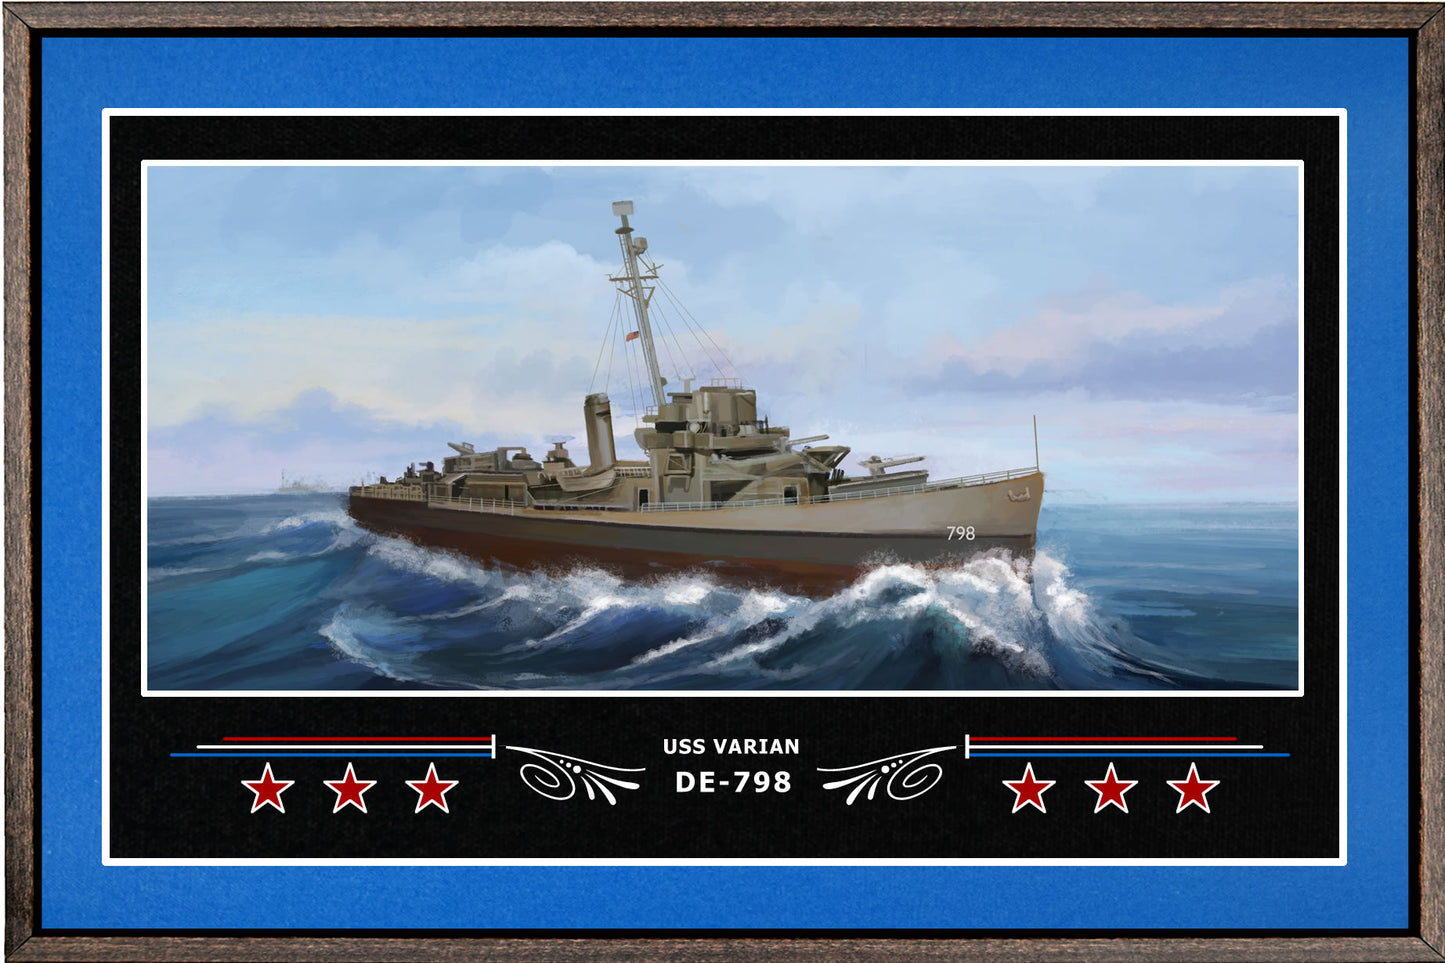 USS VARIAN DE 798 BOX FRAMED CANVAS ART BLUE